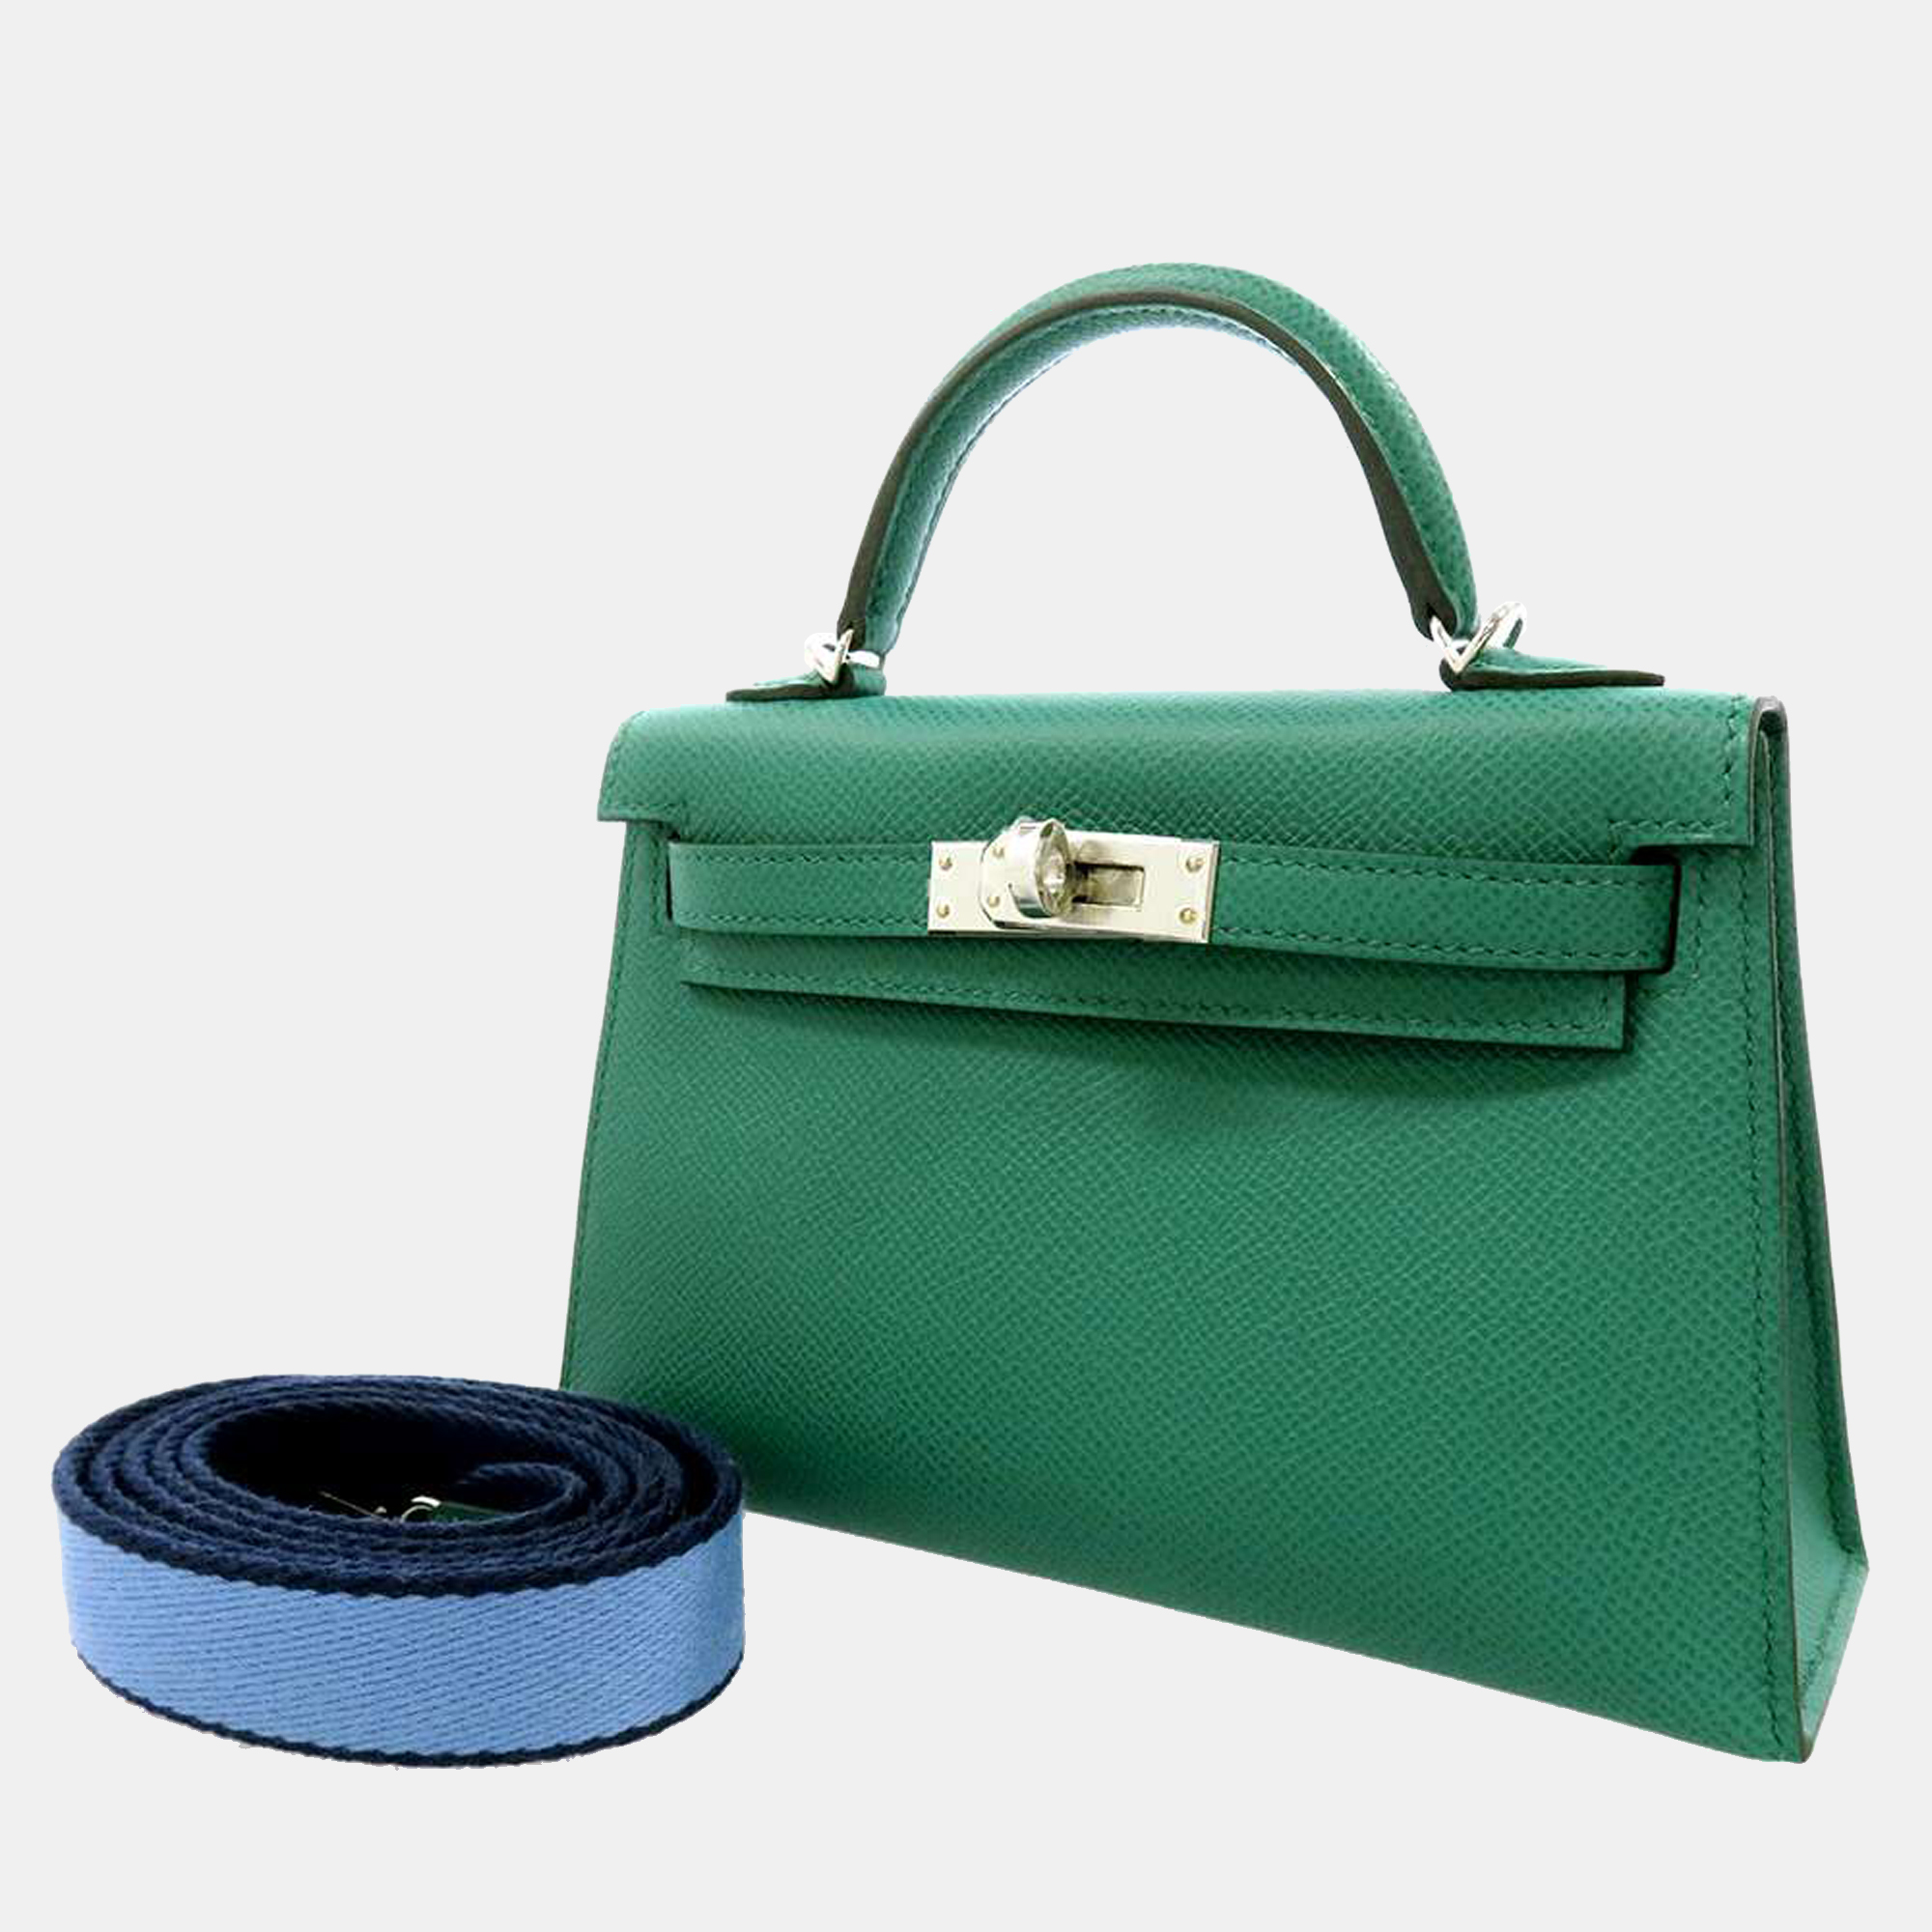 Hermes Green Epsom Leather Palladium Hardware Kelly Mini II Top Handle Bag